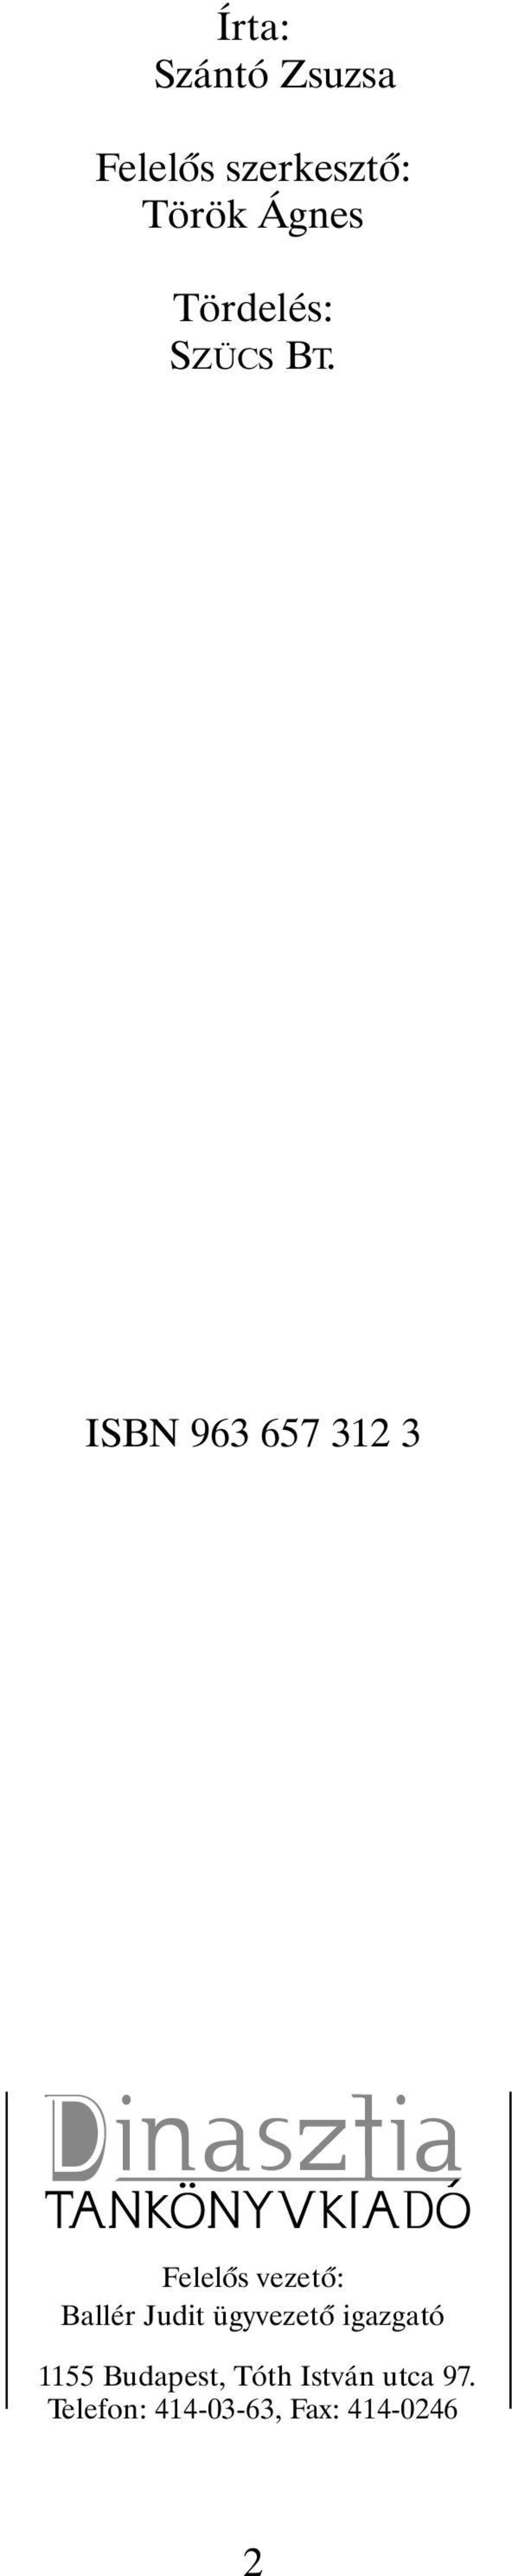 ISBN 963 657 312 3 elelôs vezetô: Ballér Judit